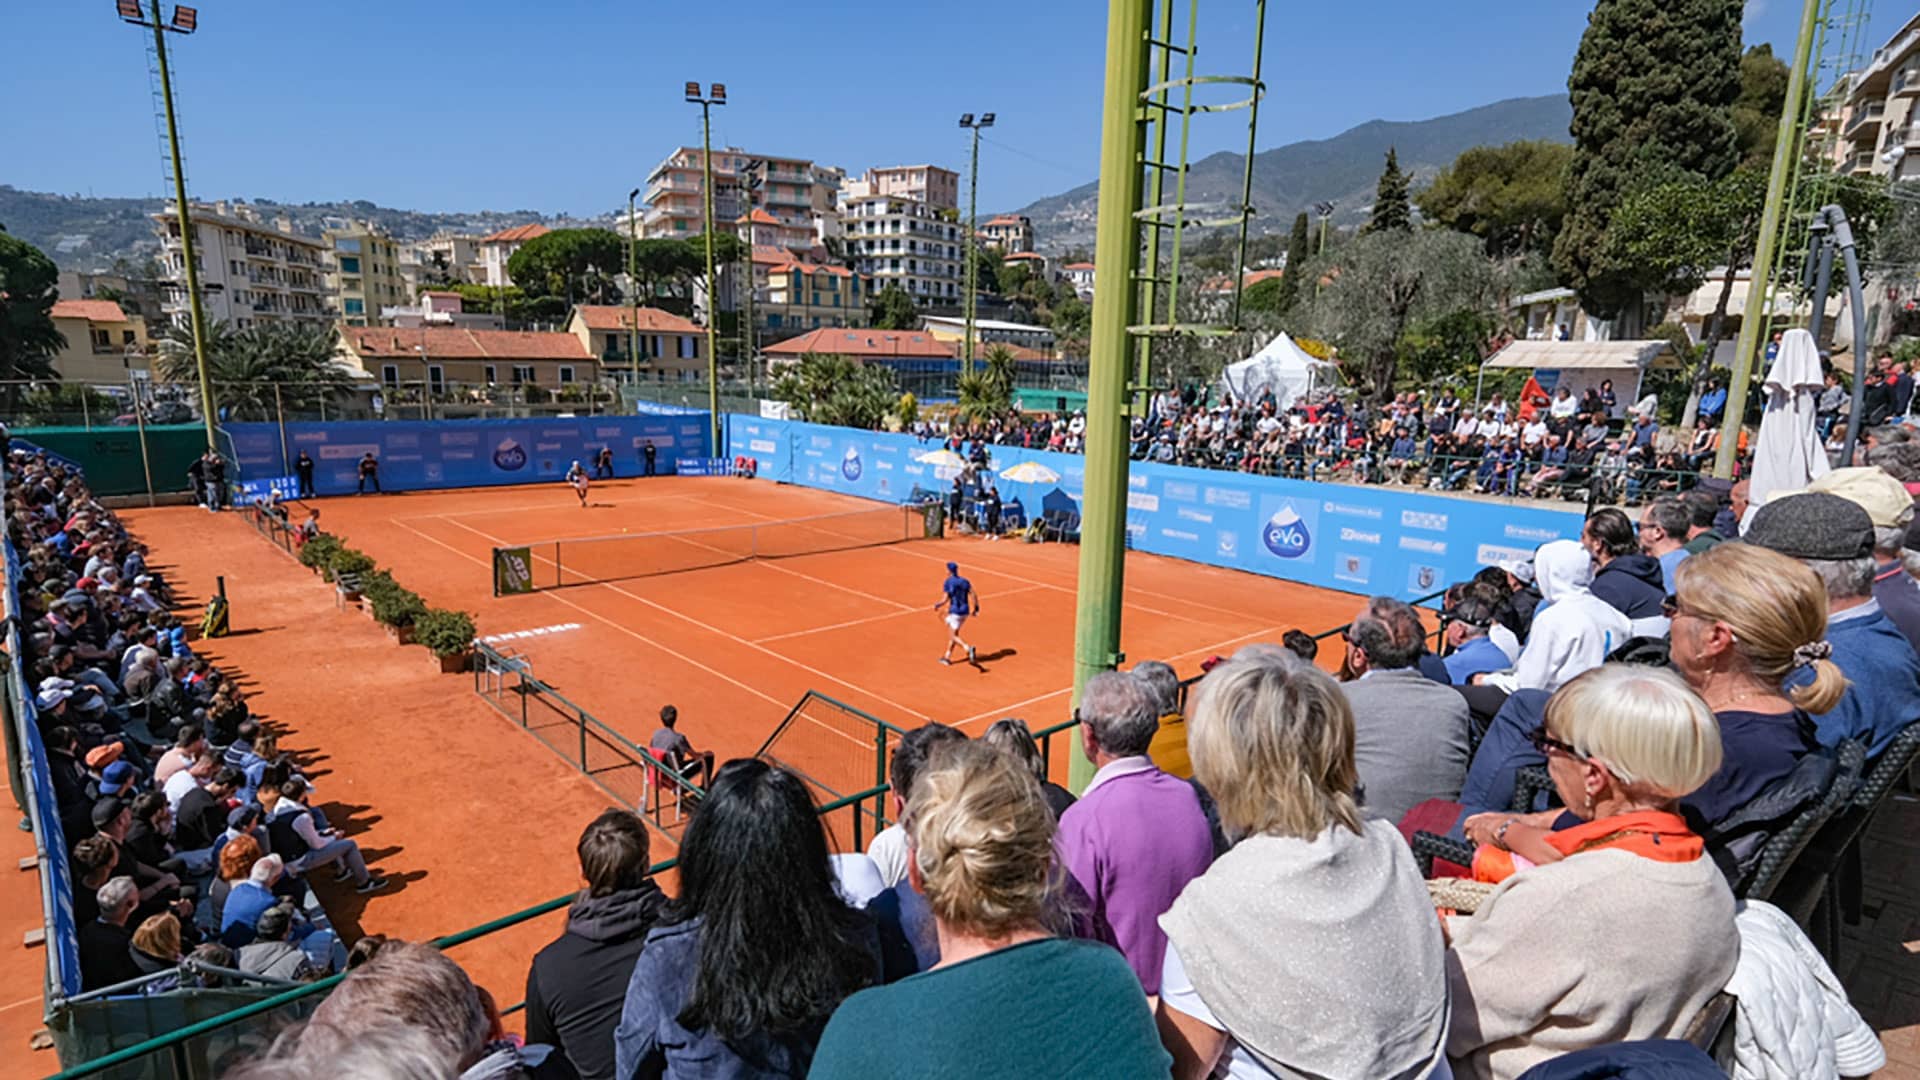 Sanremo Tennis Cup